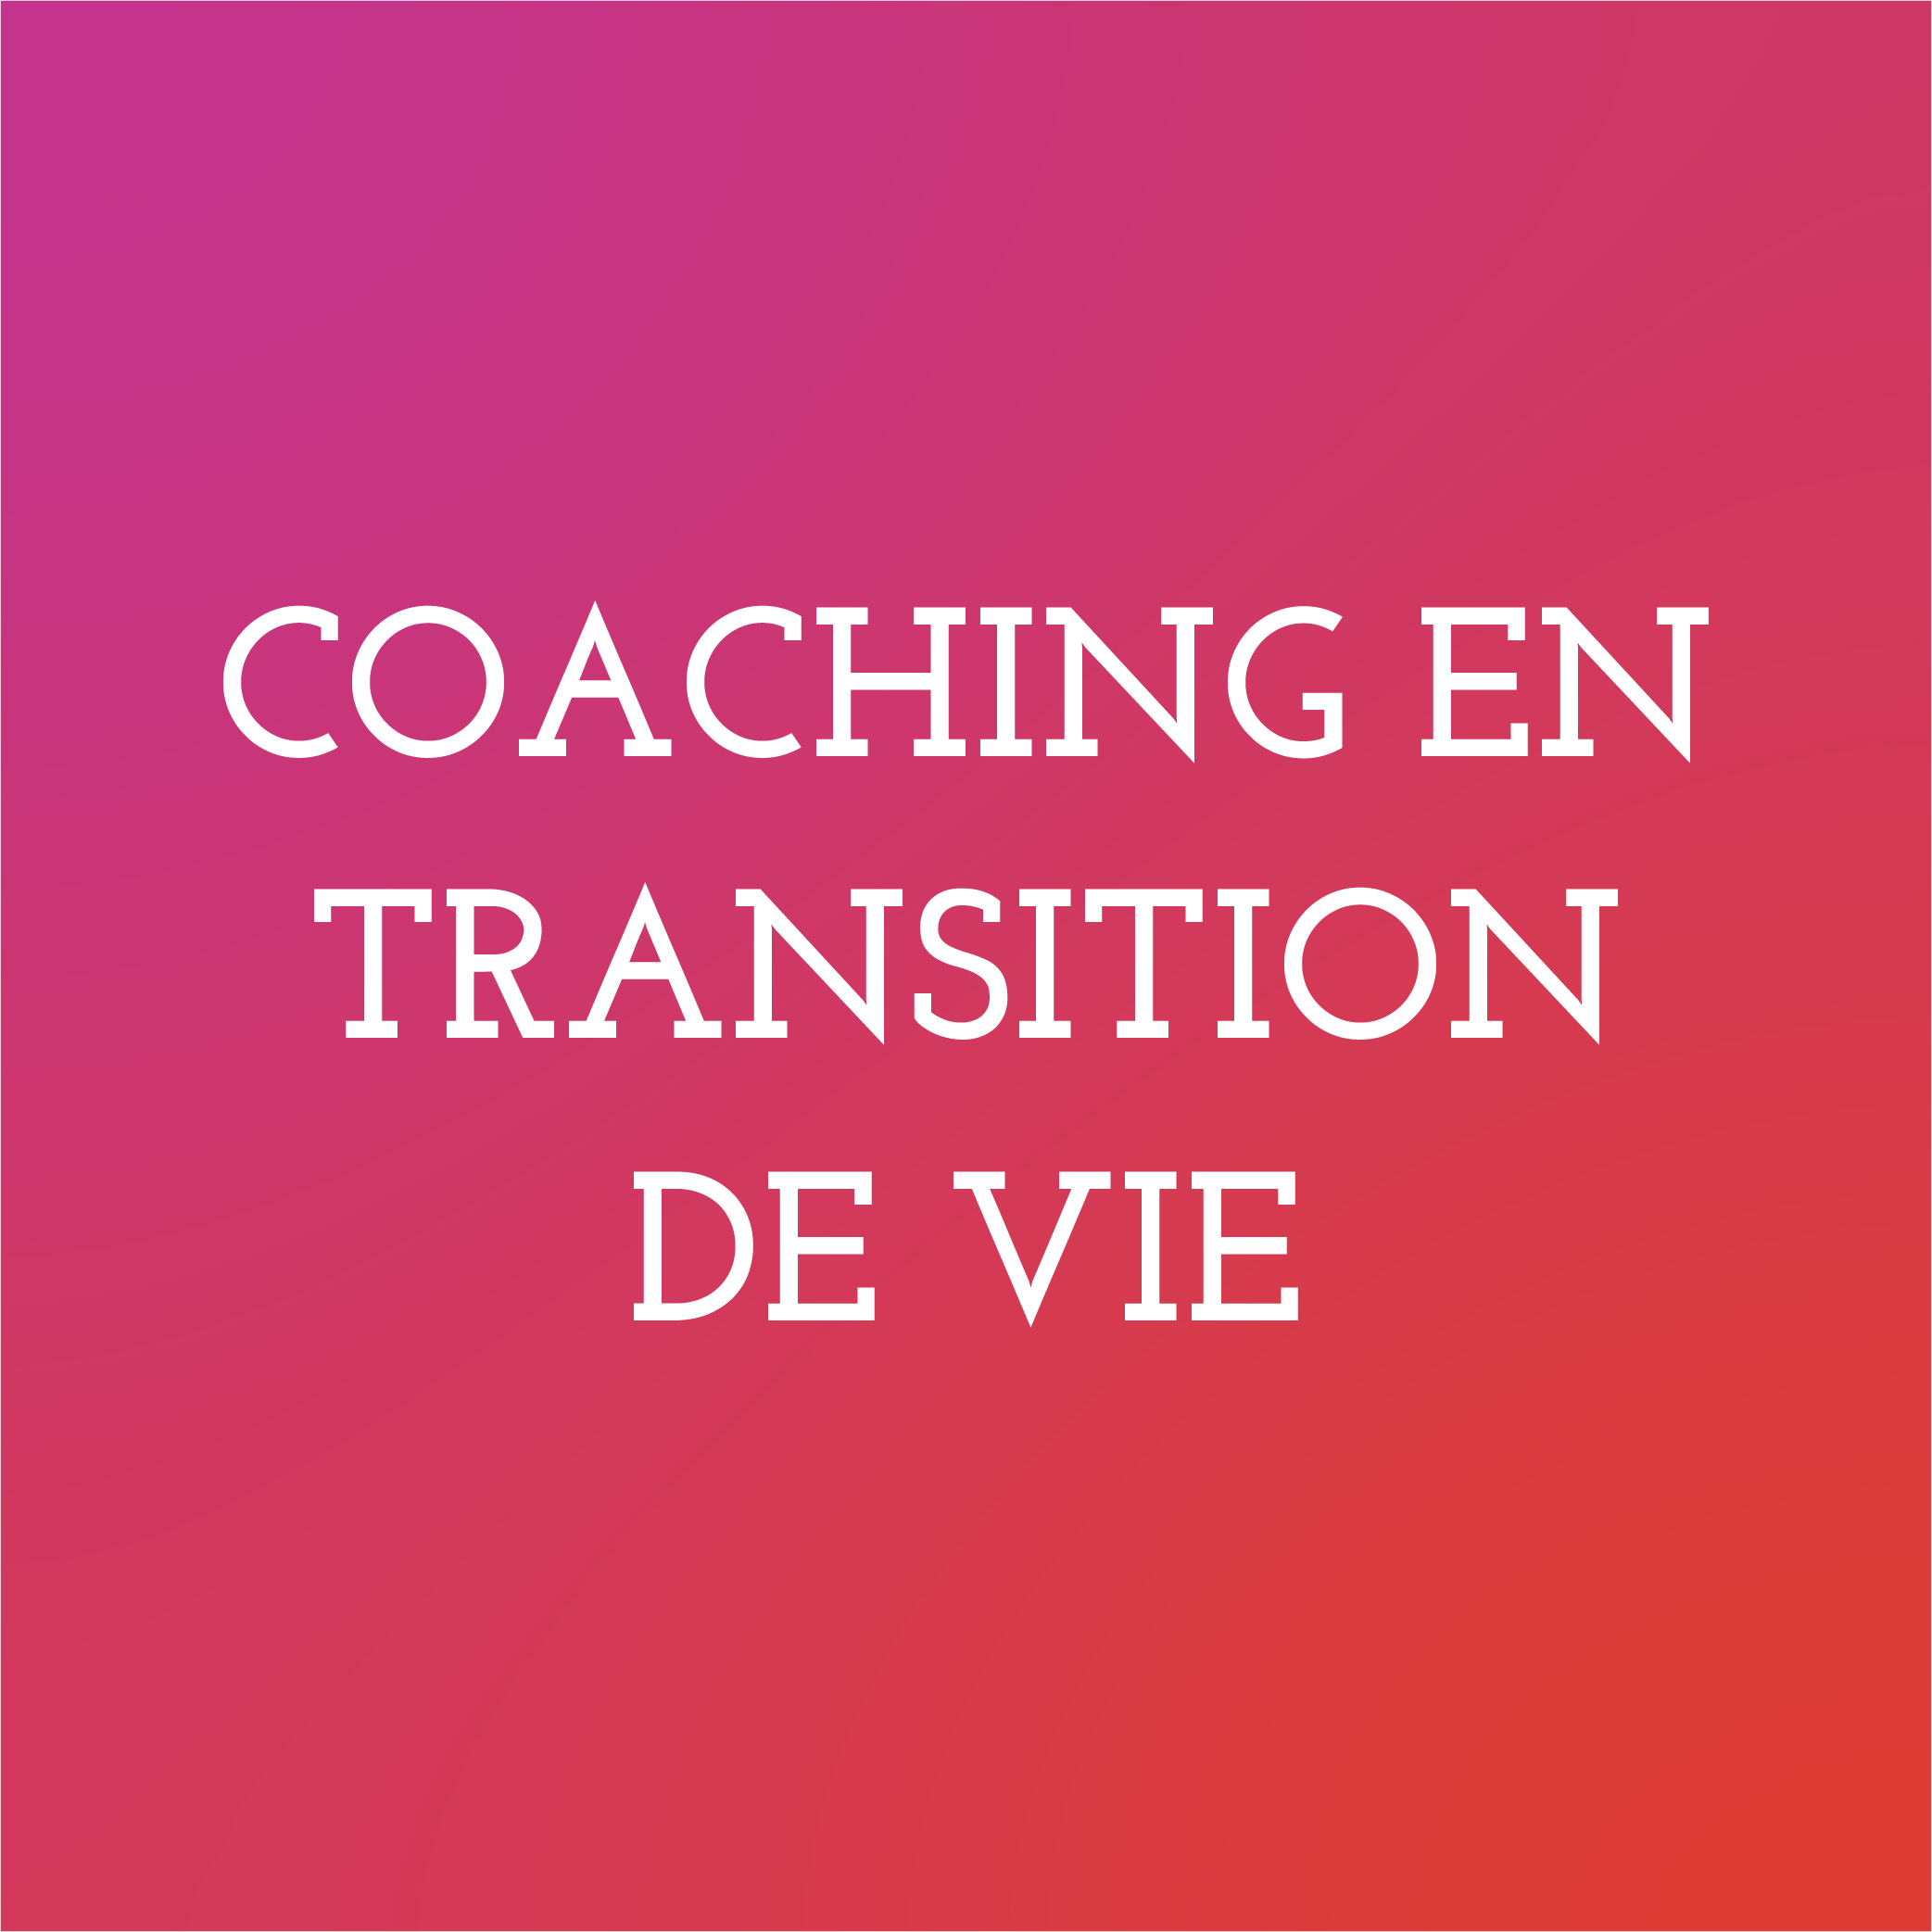 Coaching en transition de vie